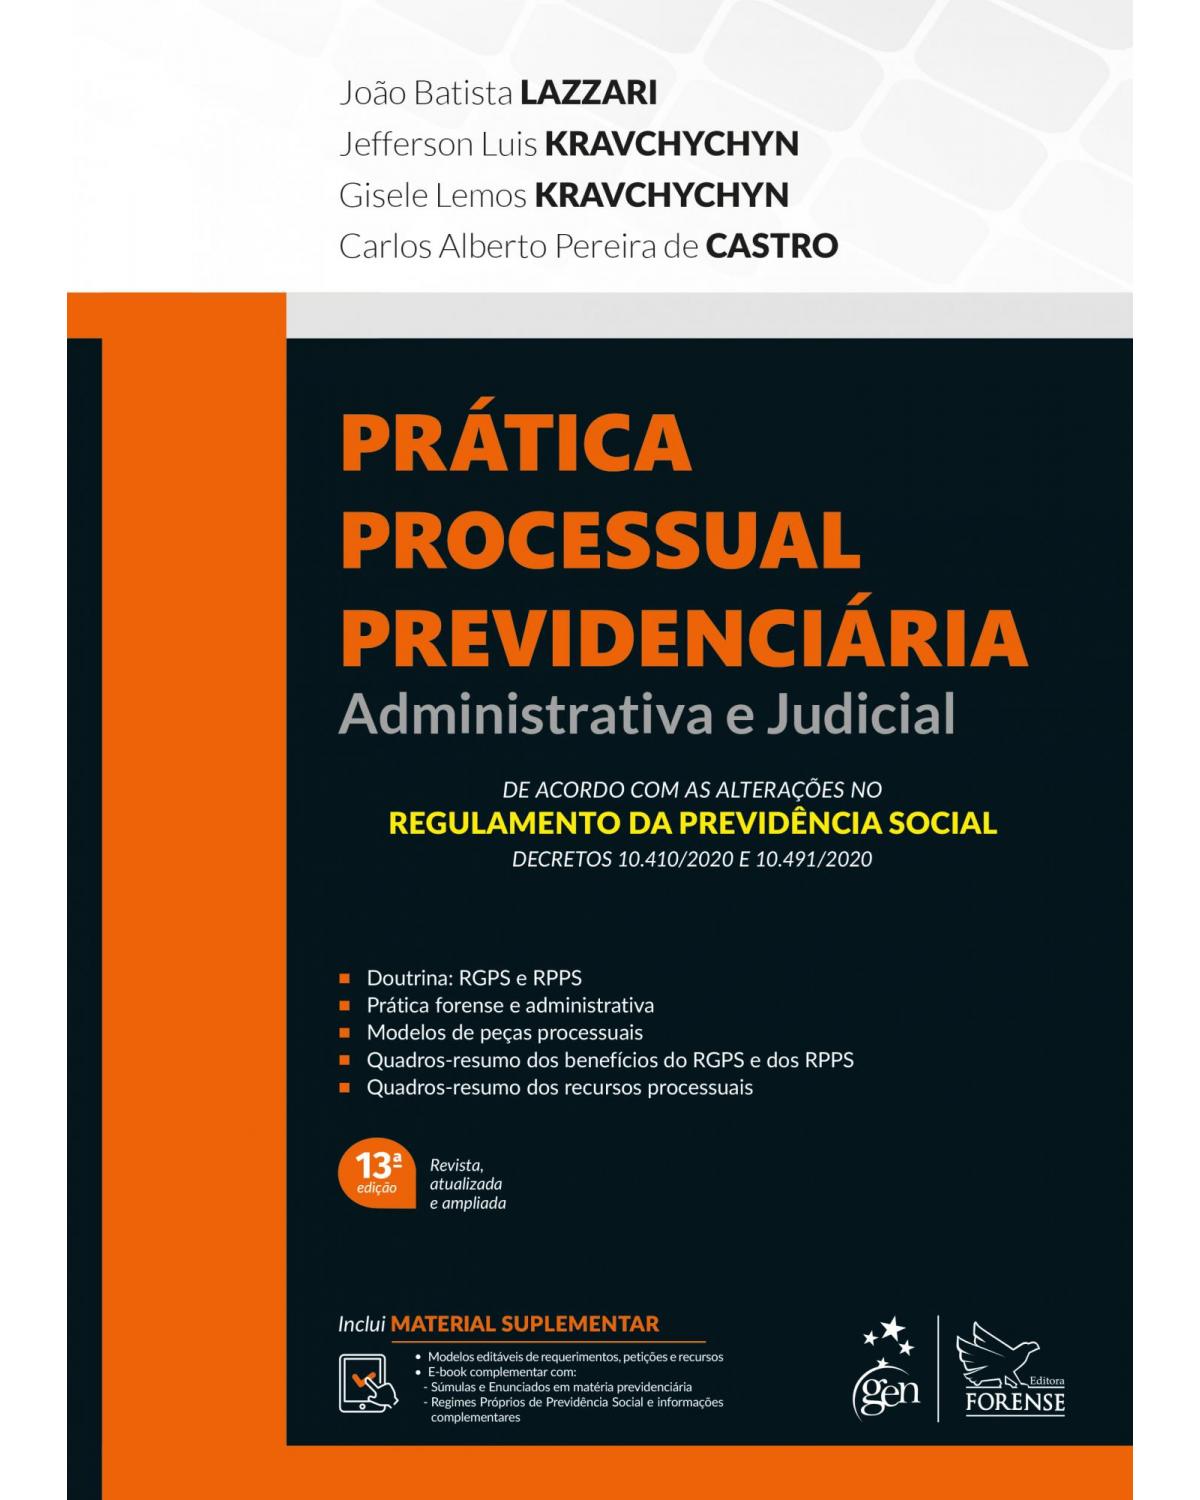 Prática Processual Previdenciária - Administrativa e Judicial - administrativa e judicial - 13ª Edição | 2021